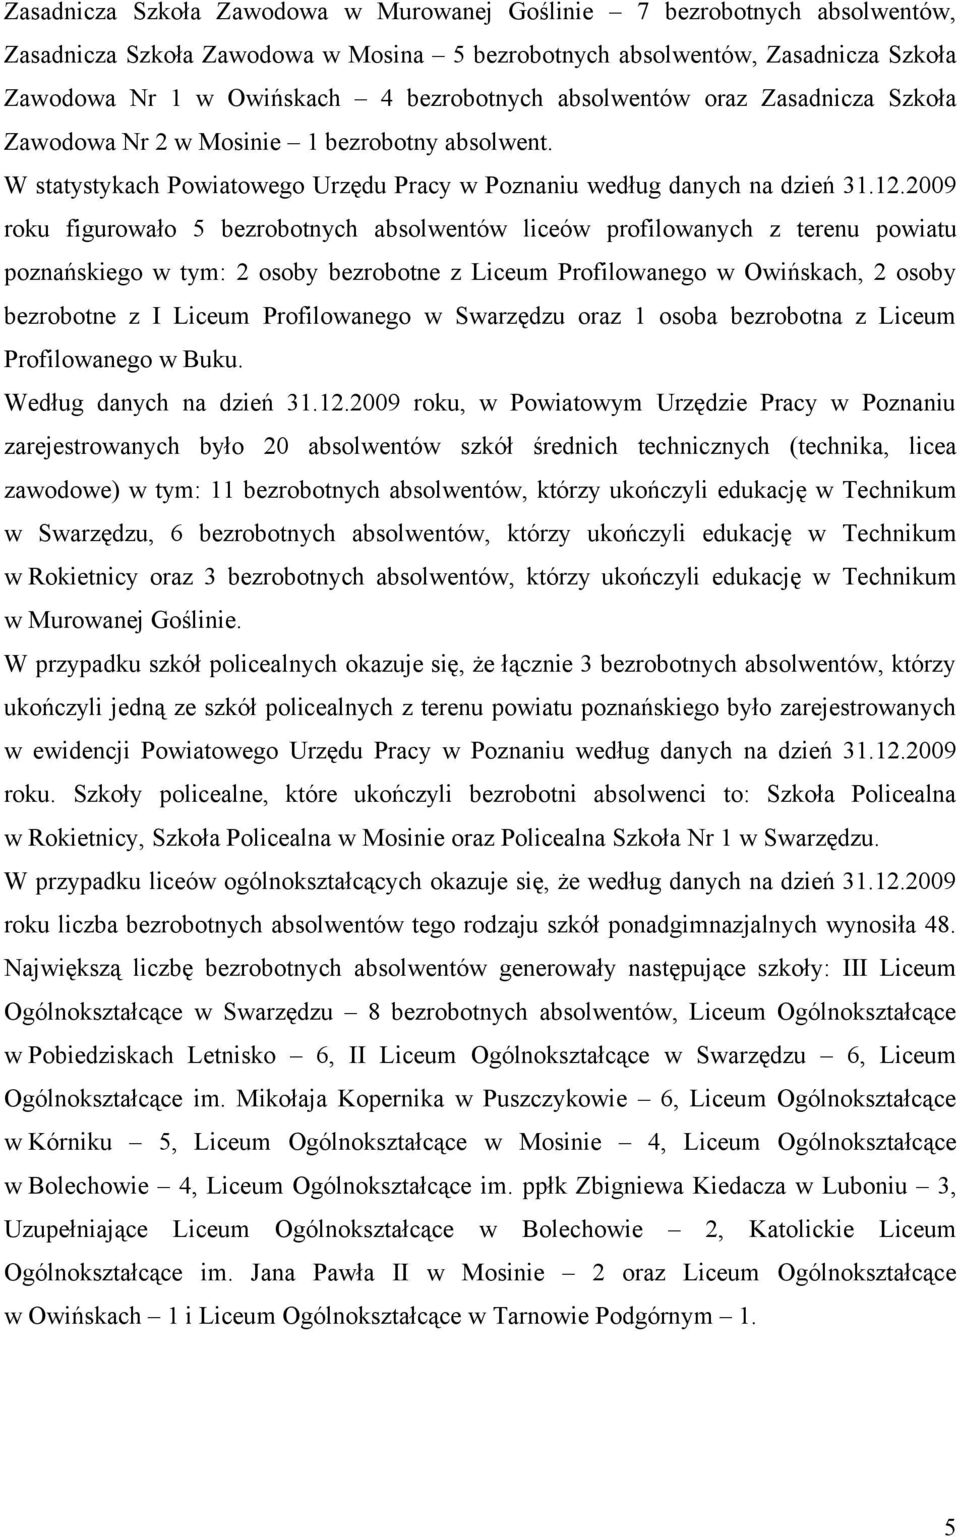 2009 roku figurowało 5 bezrobotnych absolwentów liceów profilowanych z terenu powiatu poznańskiego w tym: 2 osoby bezrobotne z Liceum Profilowanego w Owińskach, 2 osoby bezrobotne z I Liceum